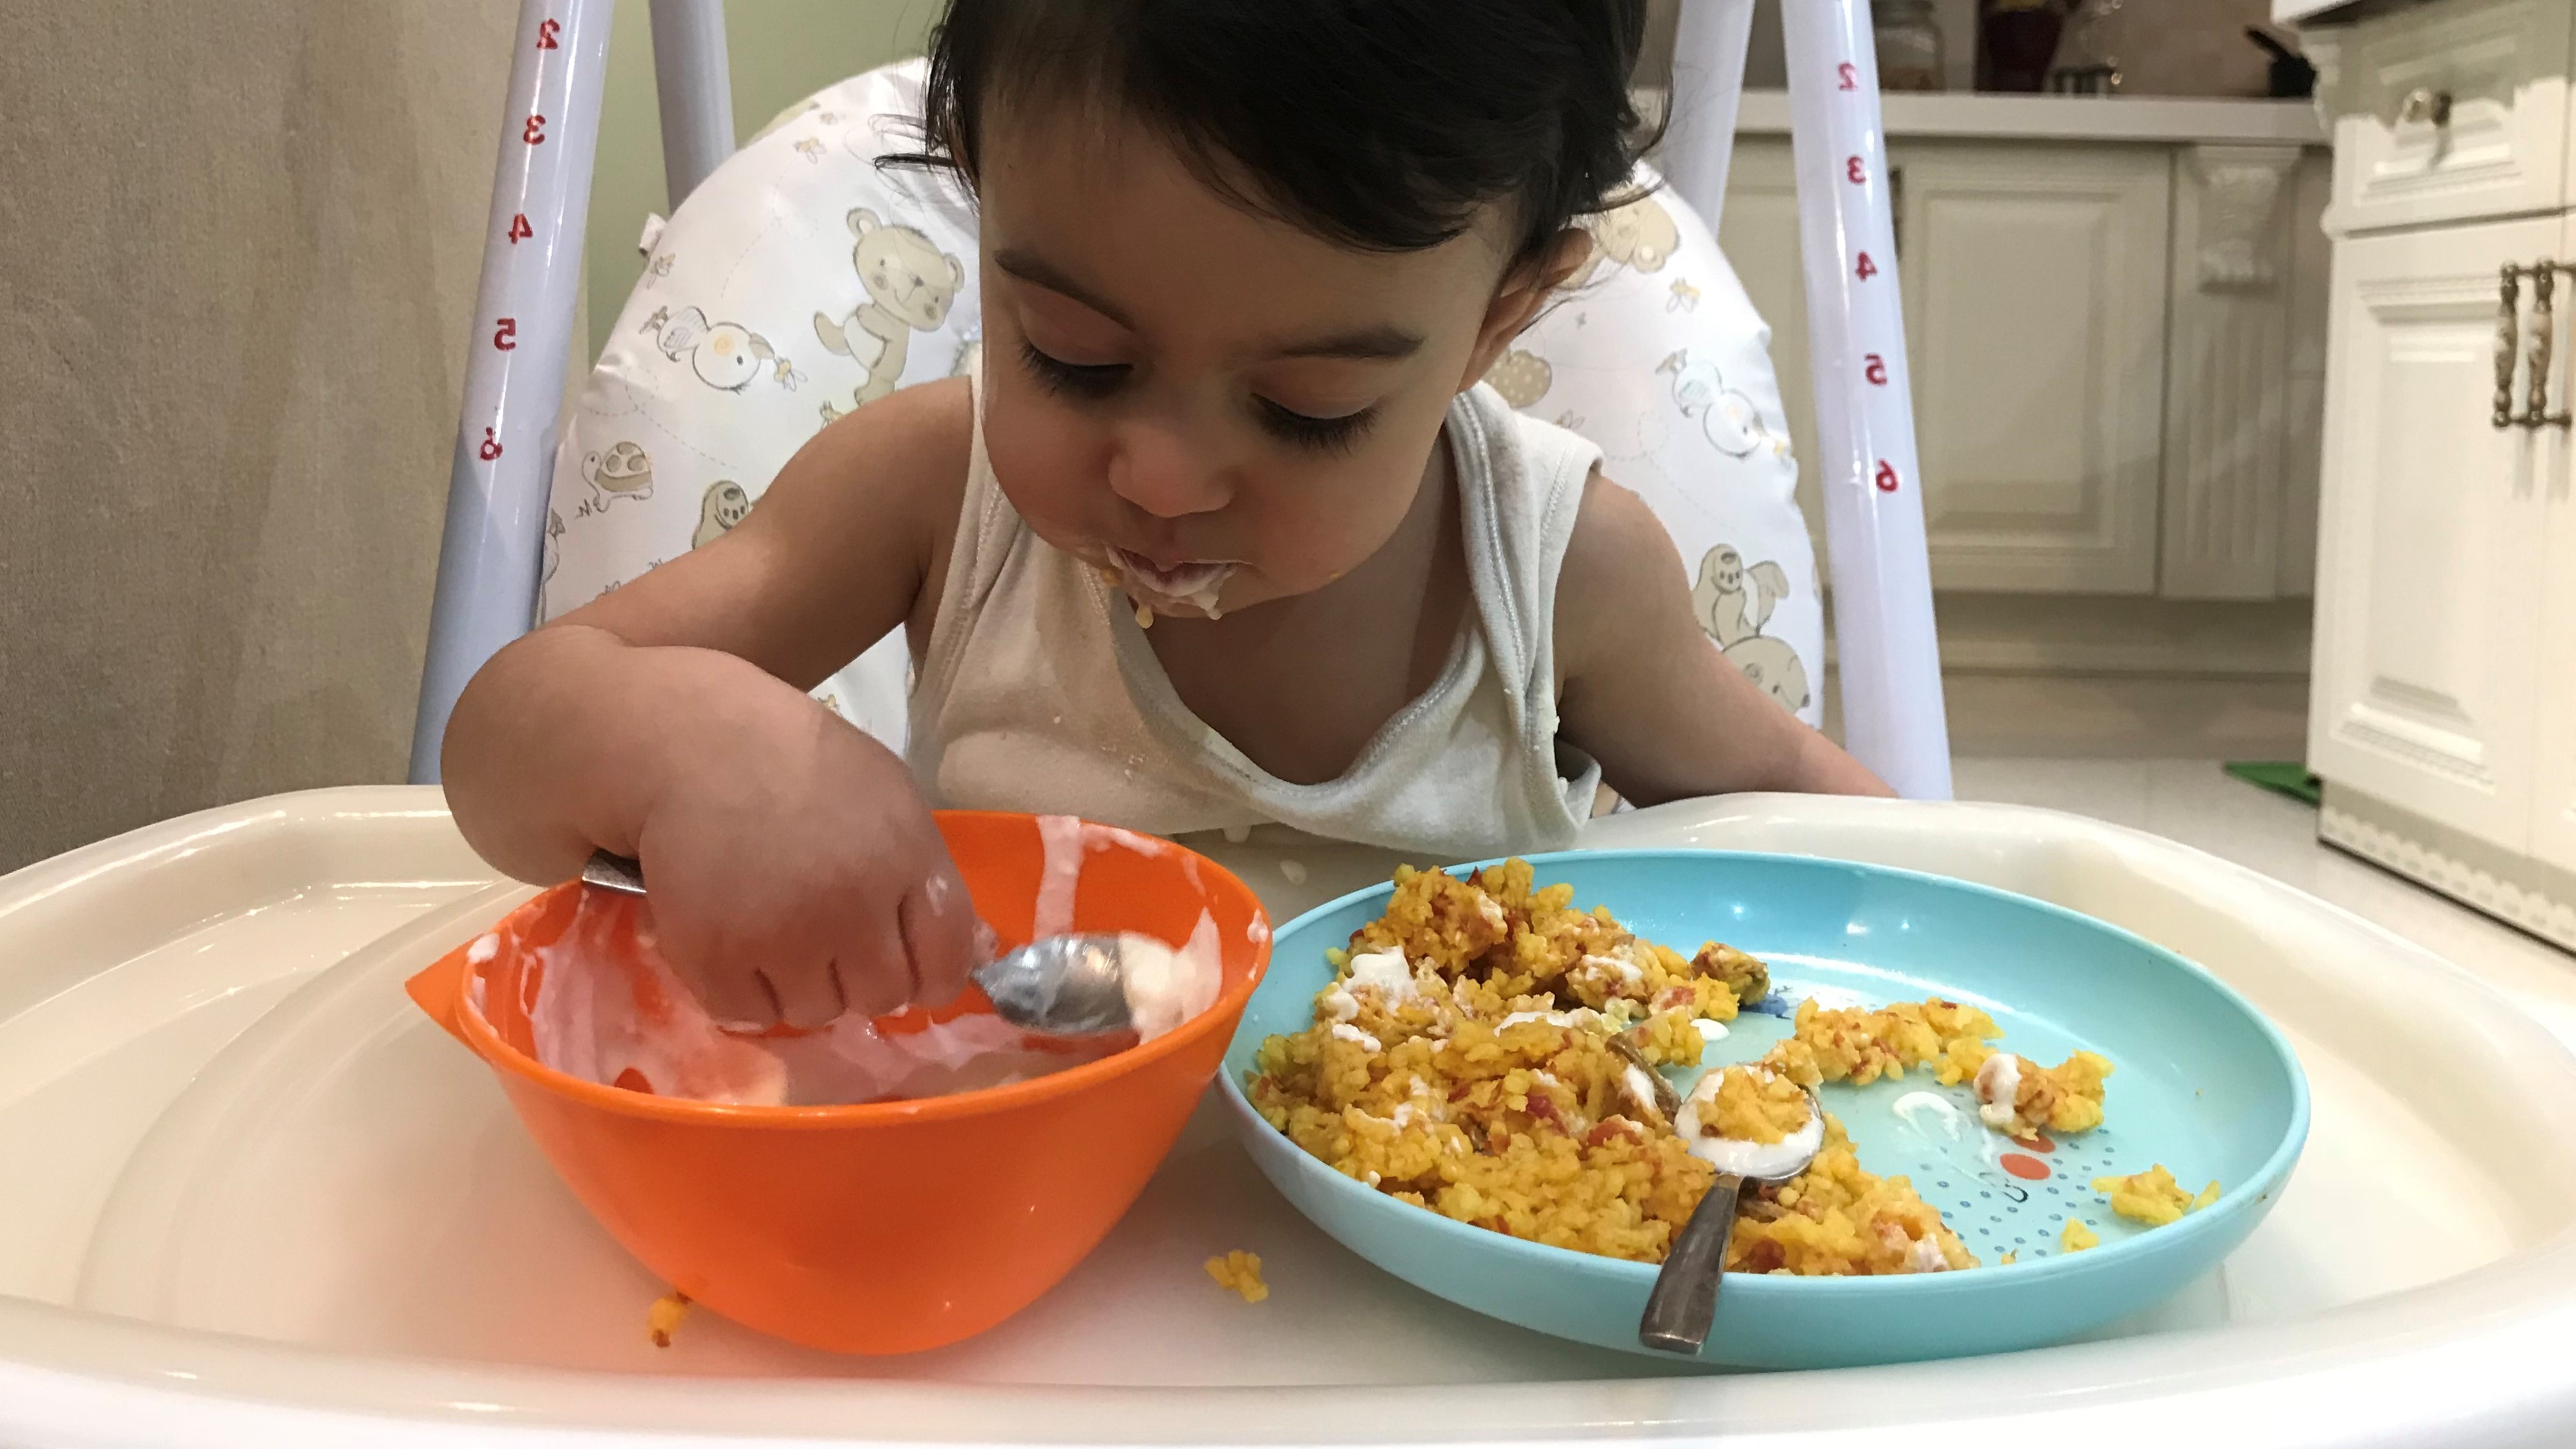 تغذیهٔ کودک: روی یا زینک در رژیم غذایی کودکان